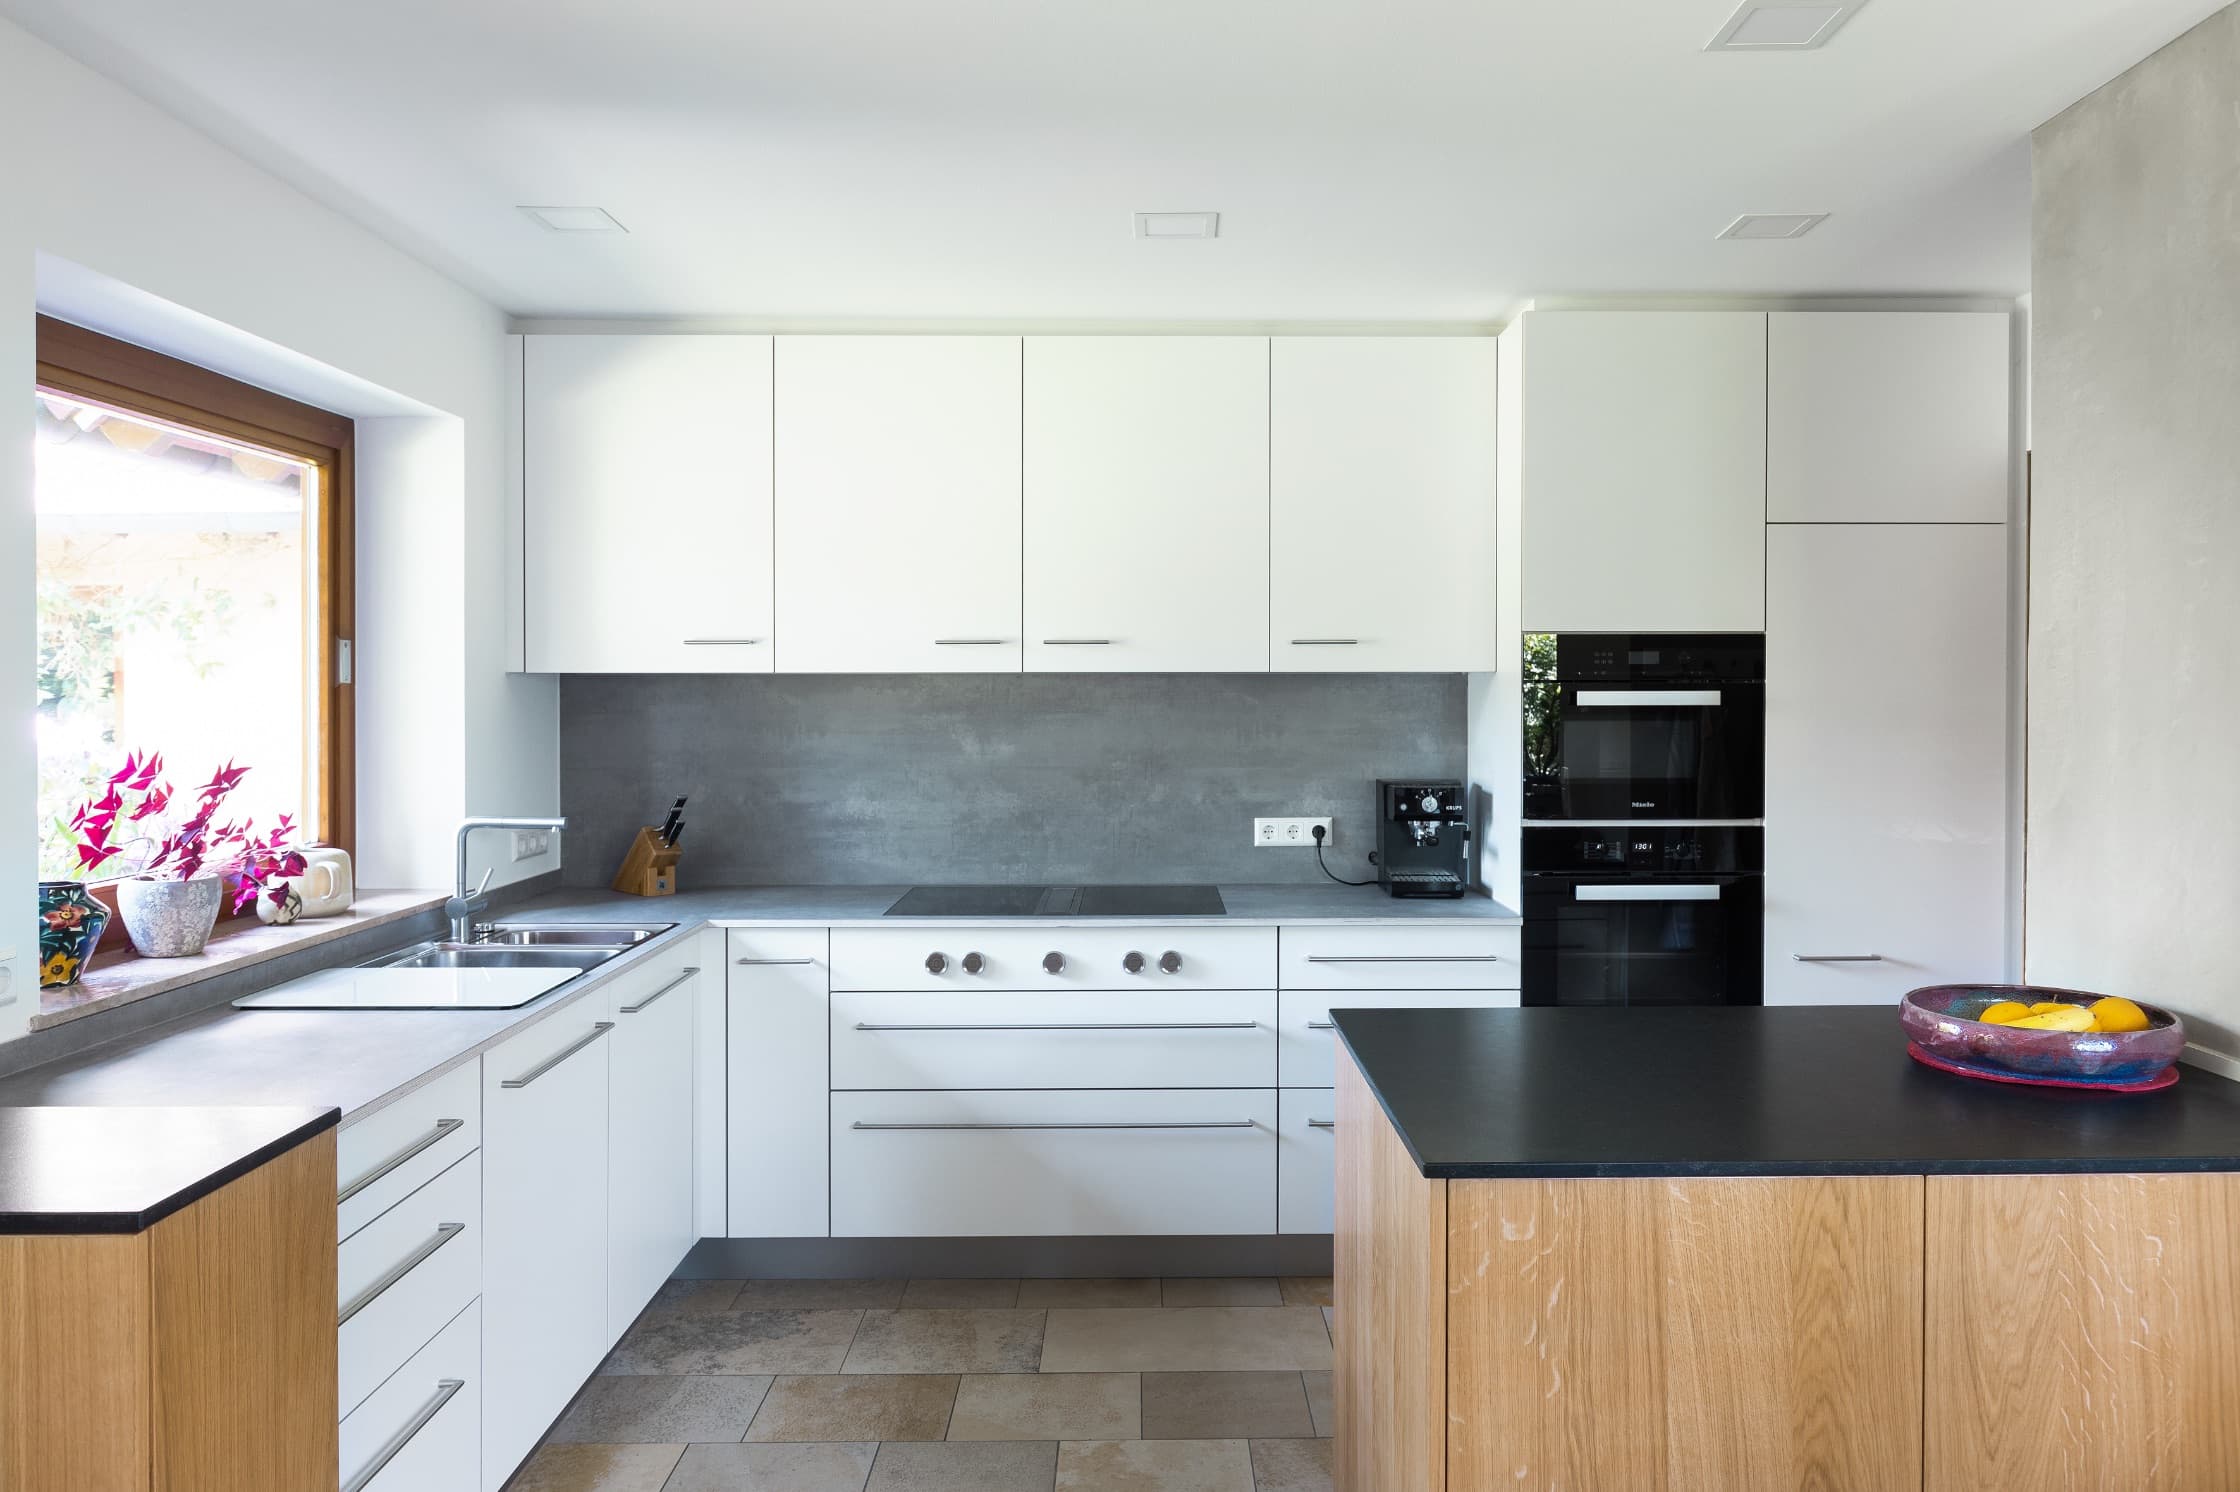 Holz und Stein, schwarz und weiß – Küche in Balance